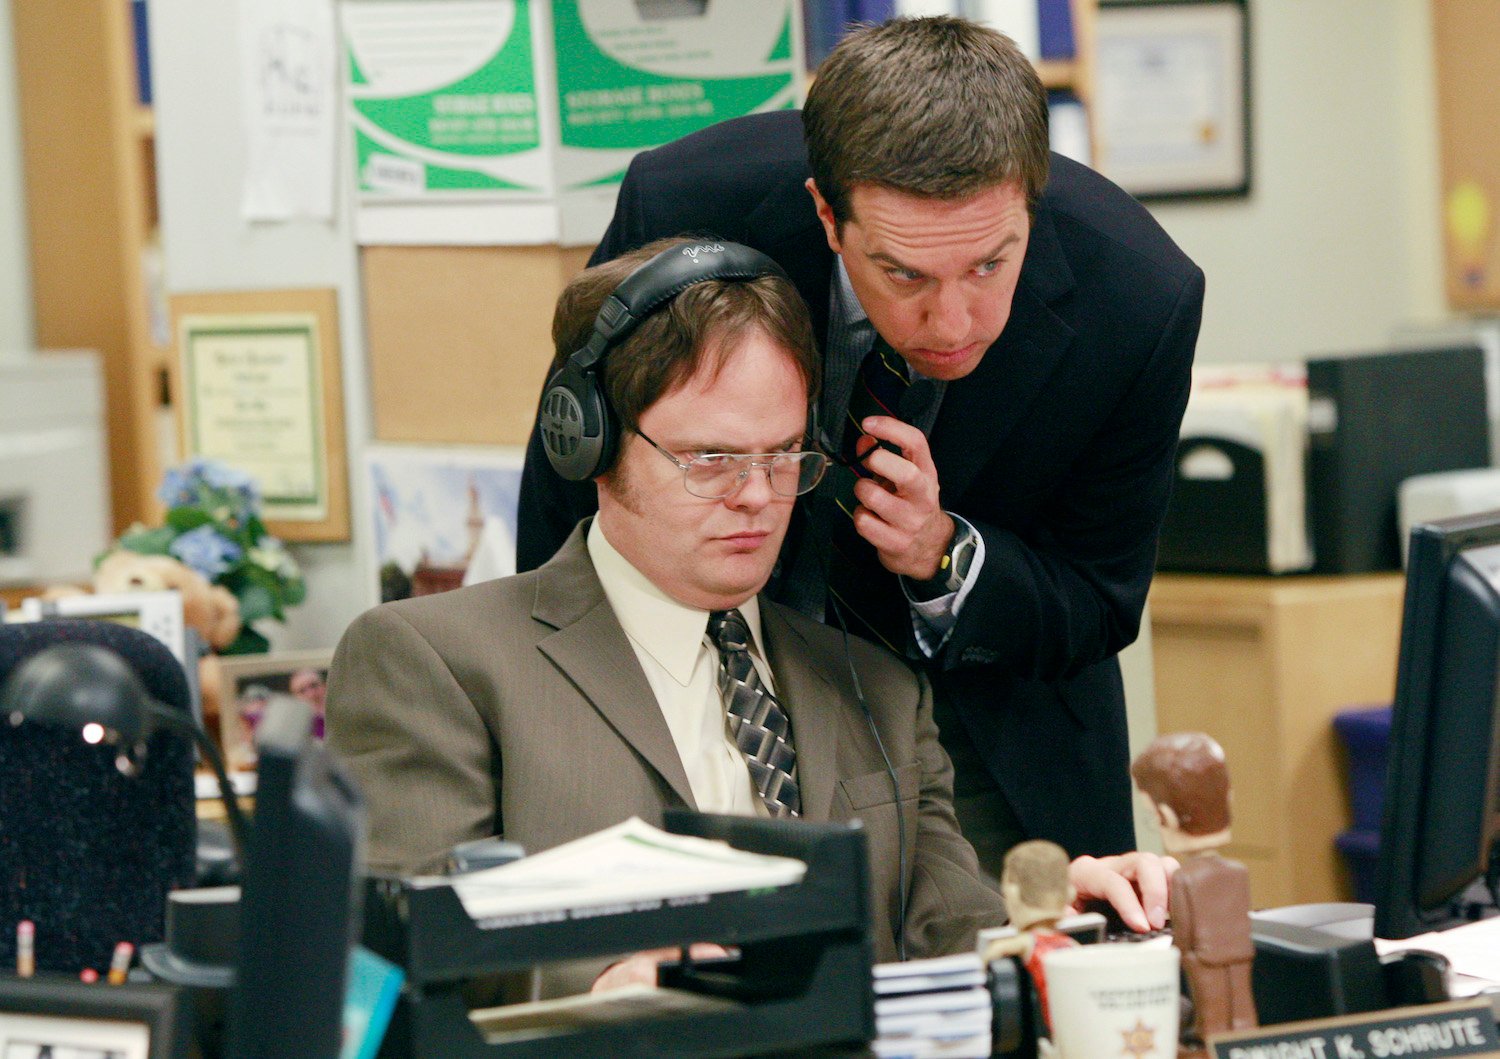 The Office stars Rainn Wilson as Dwight Schrute and Ed Helms as Andy Bernard 